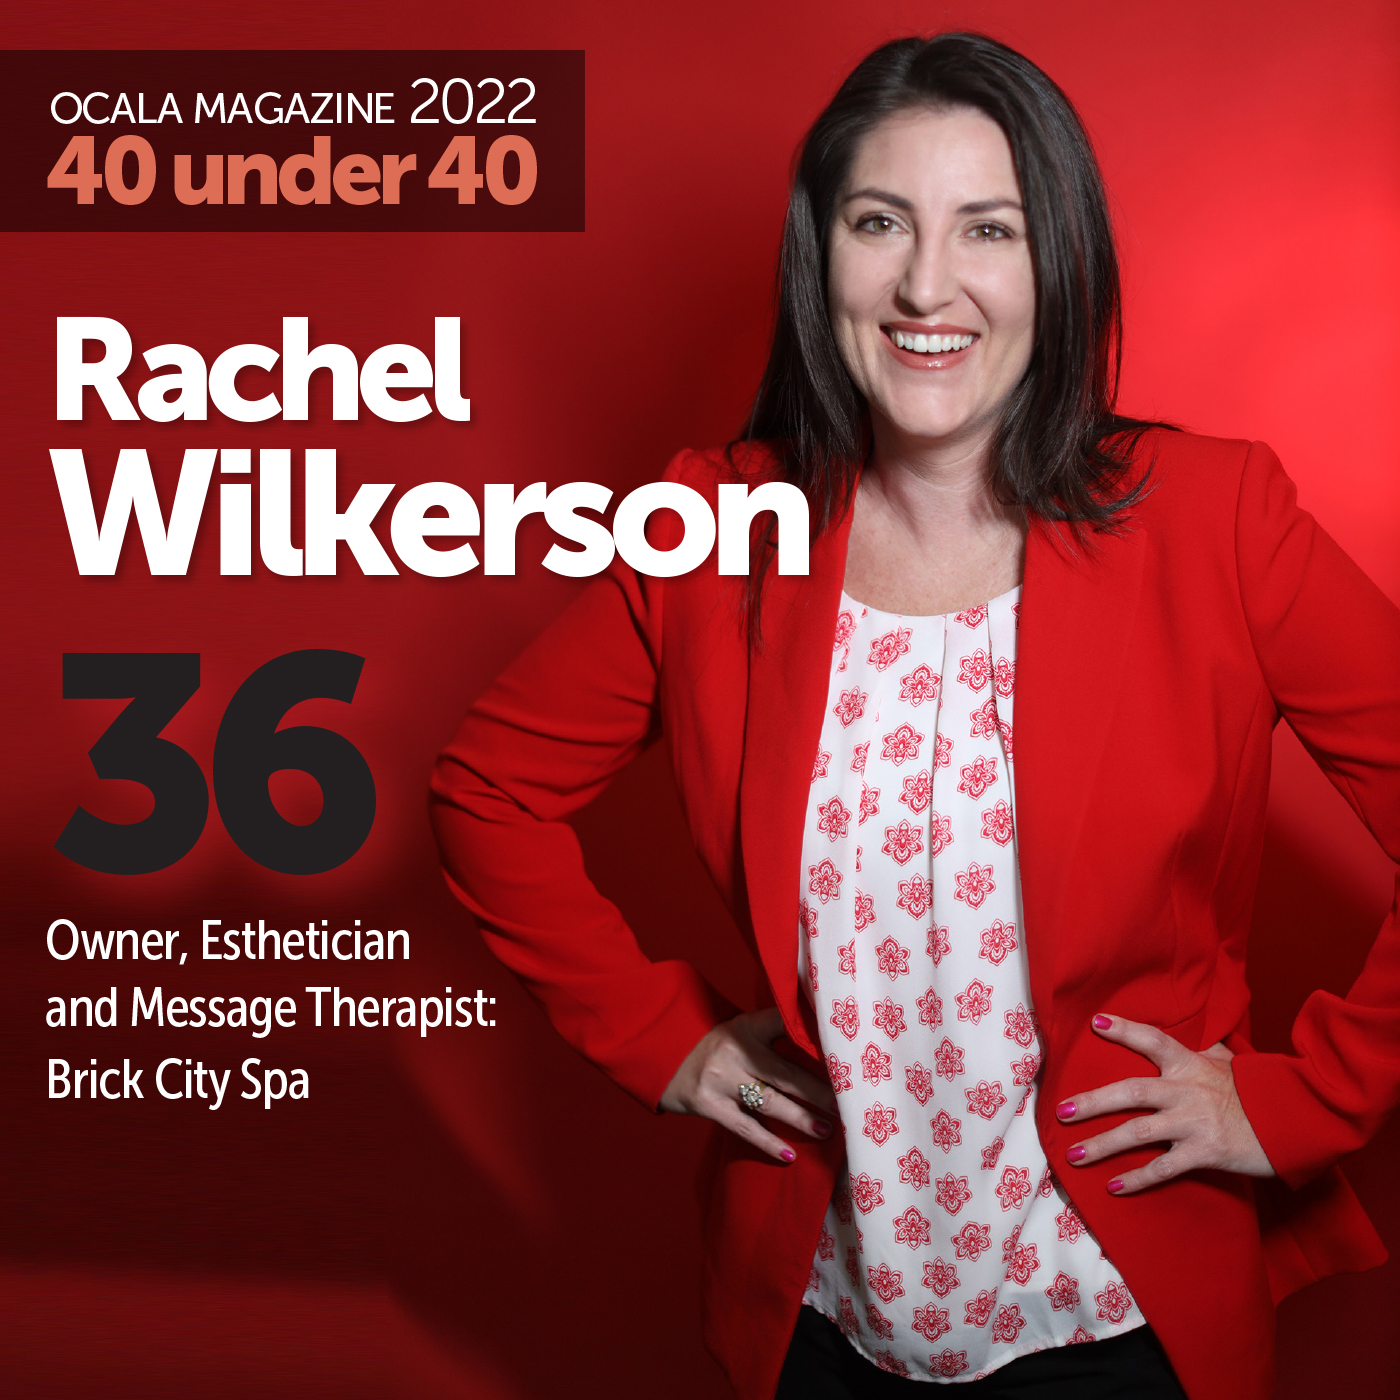 Rachel Wilkerson Ocala Magazine 2022 40 under 40